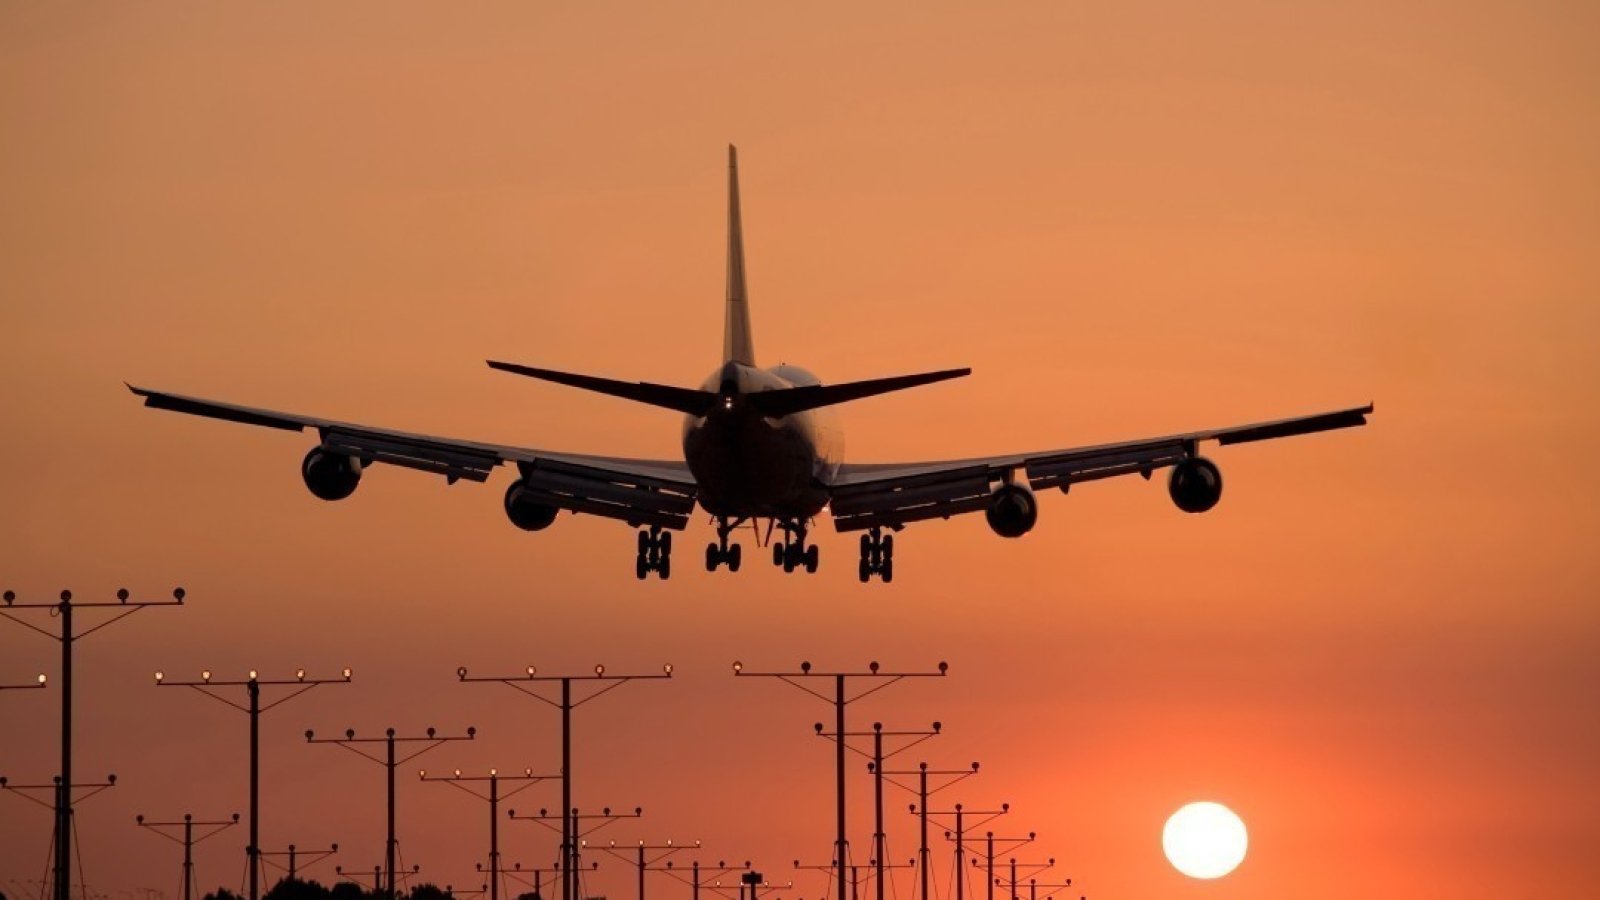 Поиск и выбор самых дешевых авиабилетов для путешествия